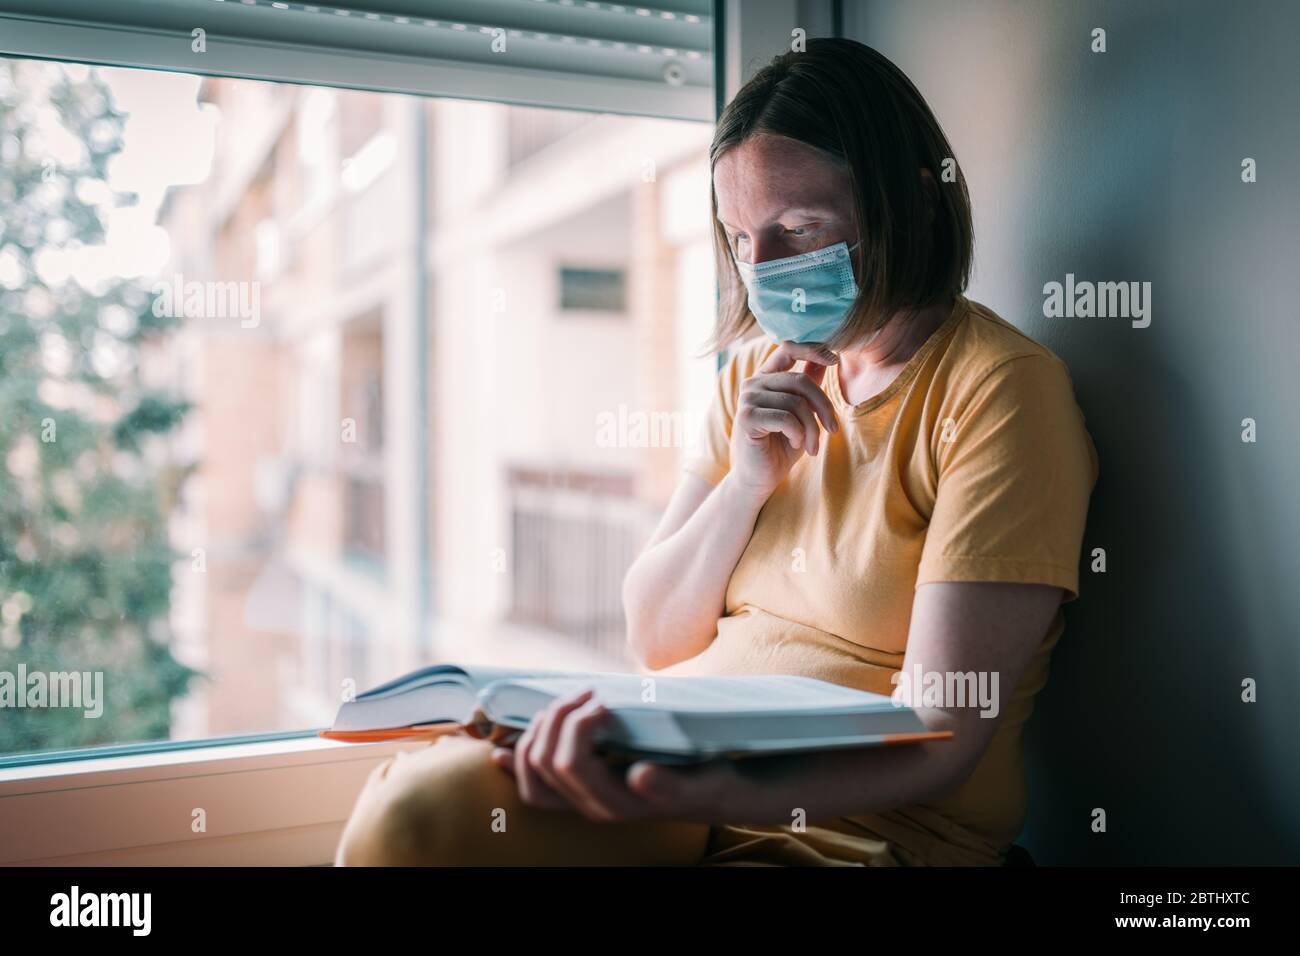 Donna in auto-isolamento lettura libro dalla finestra. Donna con maschera respiratoria protettiva per il viso in quarantena domestica. Foto Stock